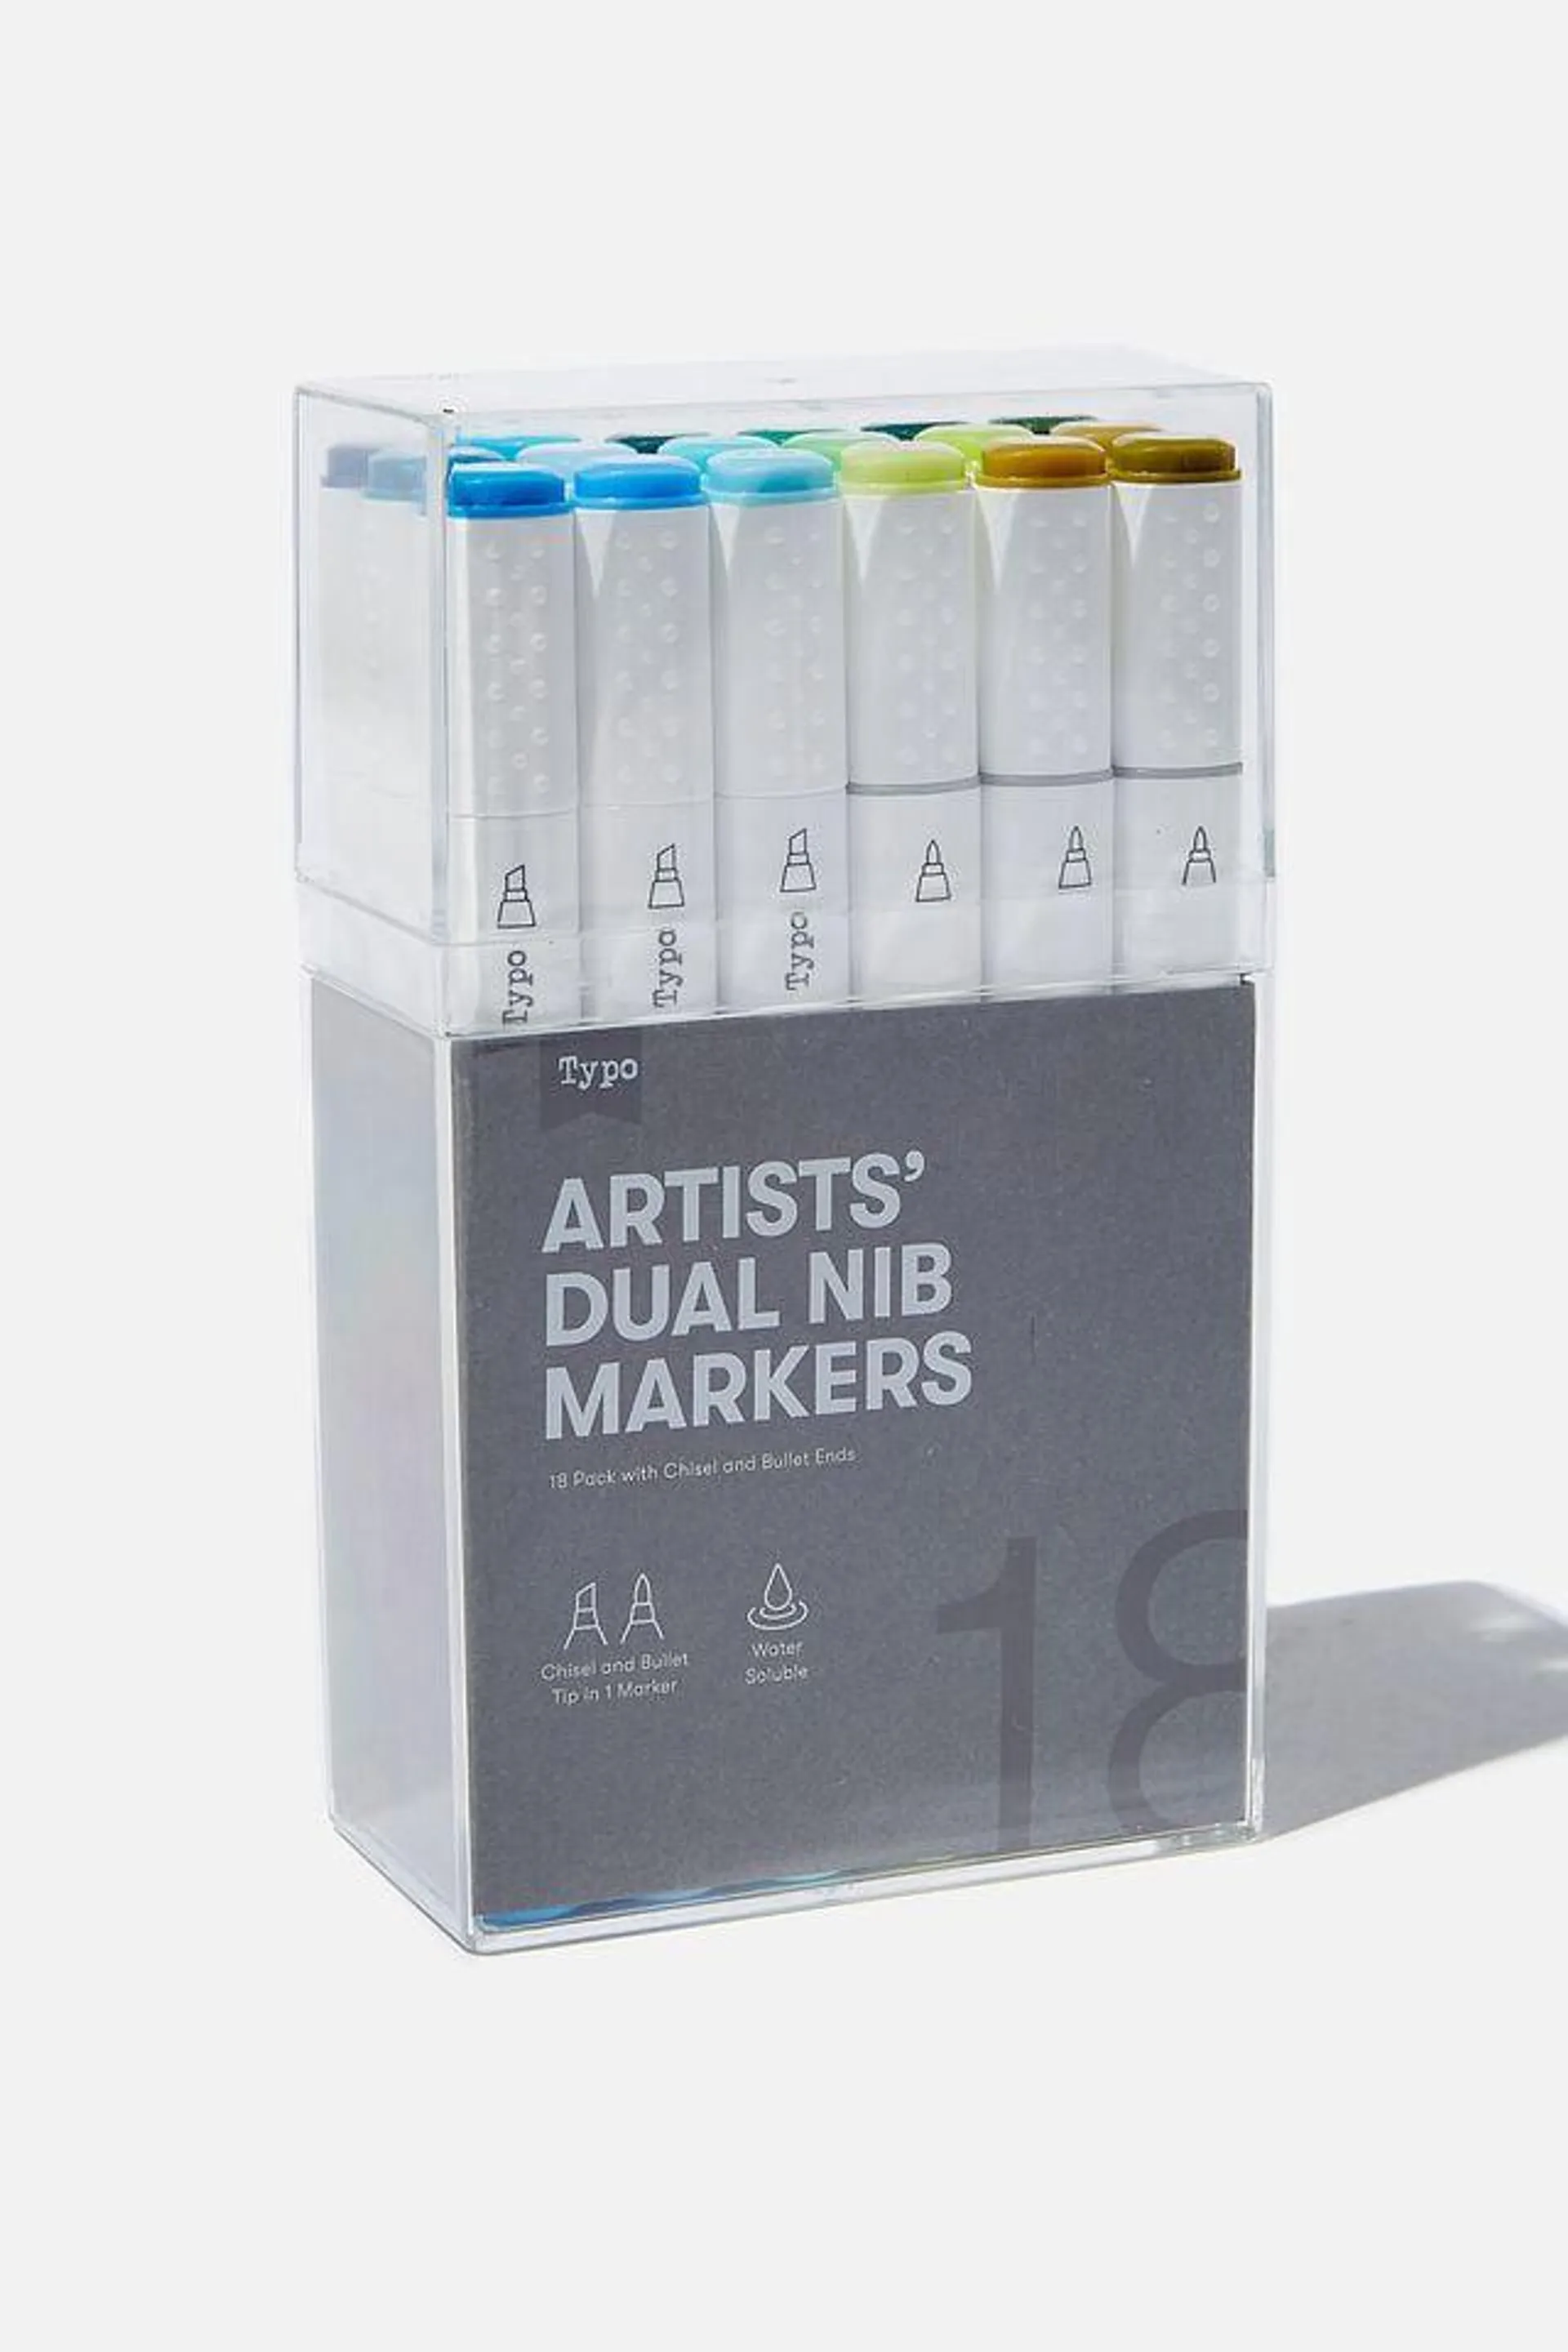 Artists Dual Nib Marker 18Pk